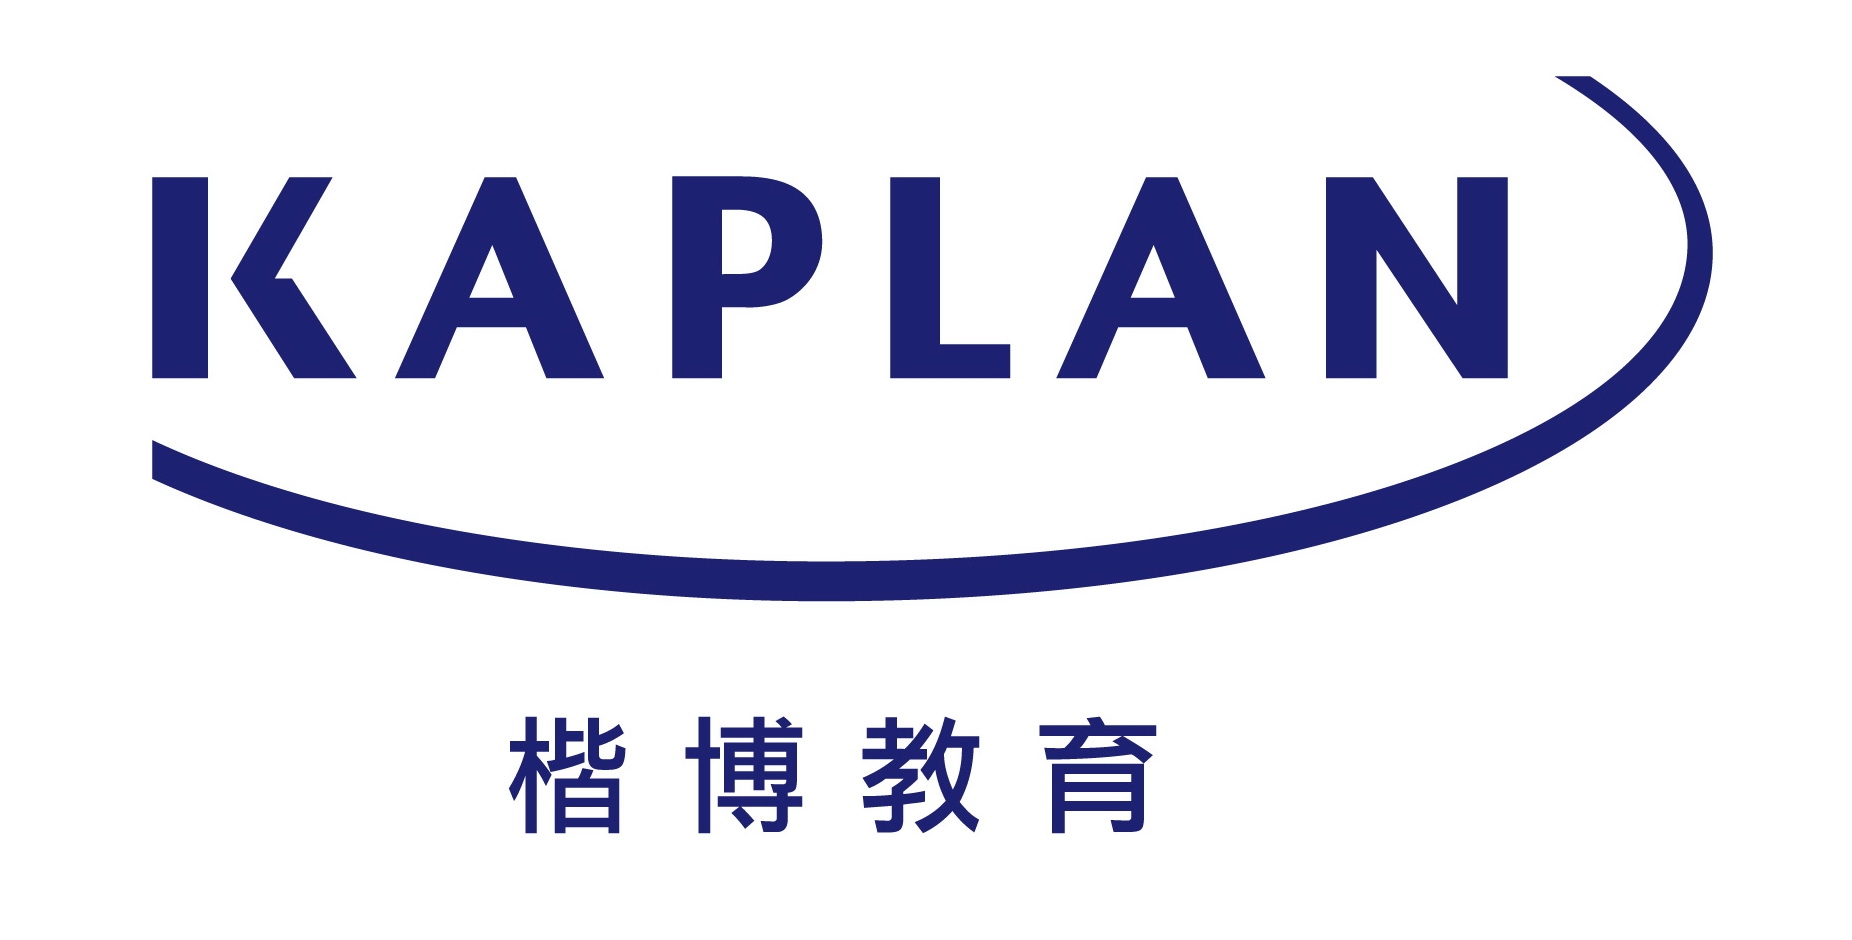 Kaplan Financial (HK) Limited